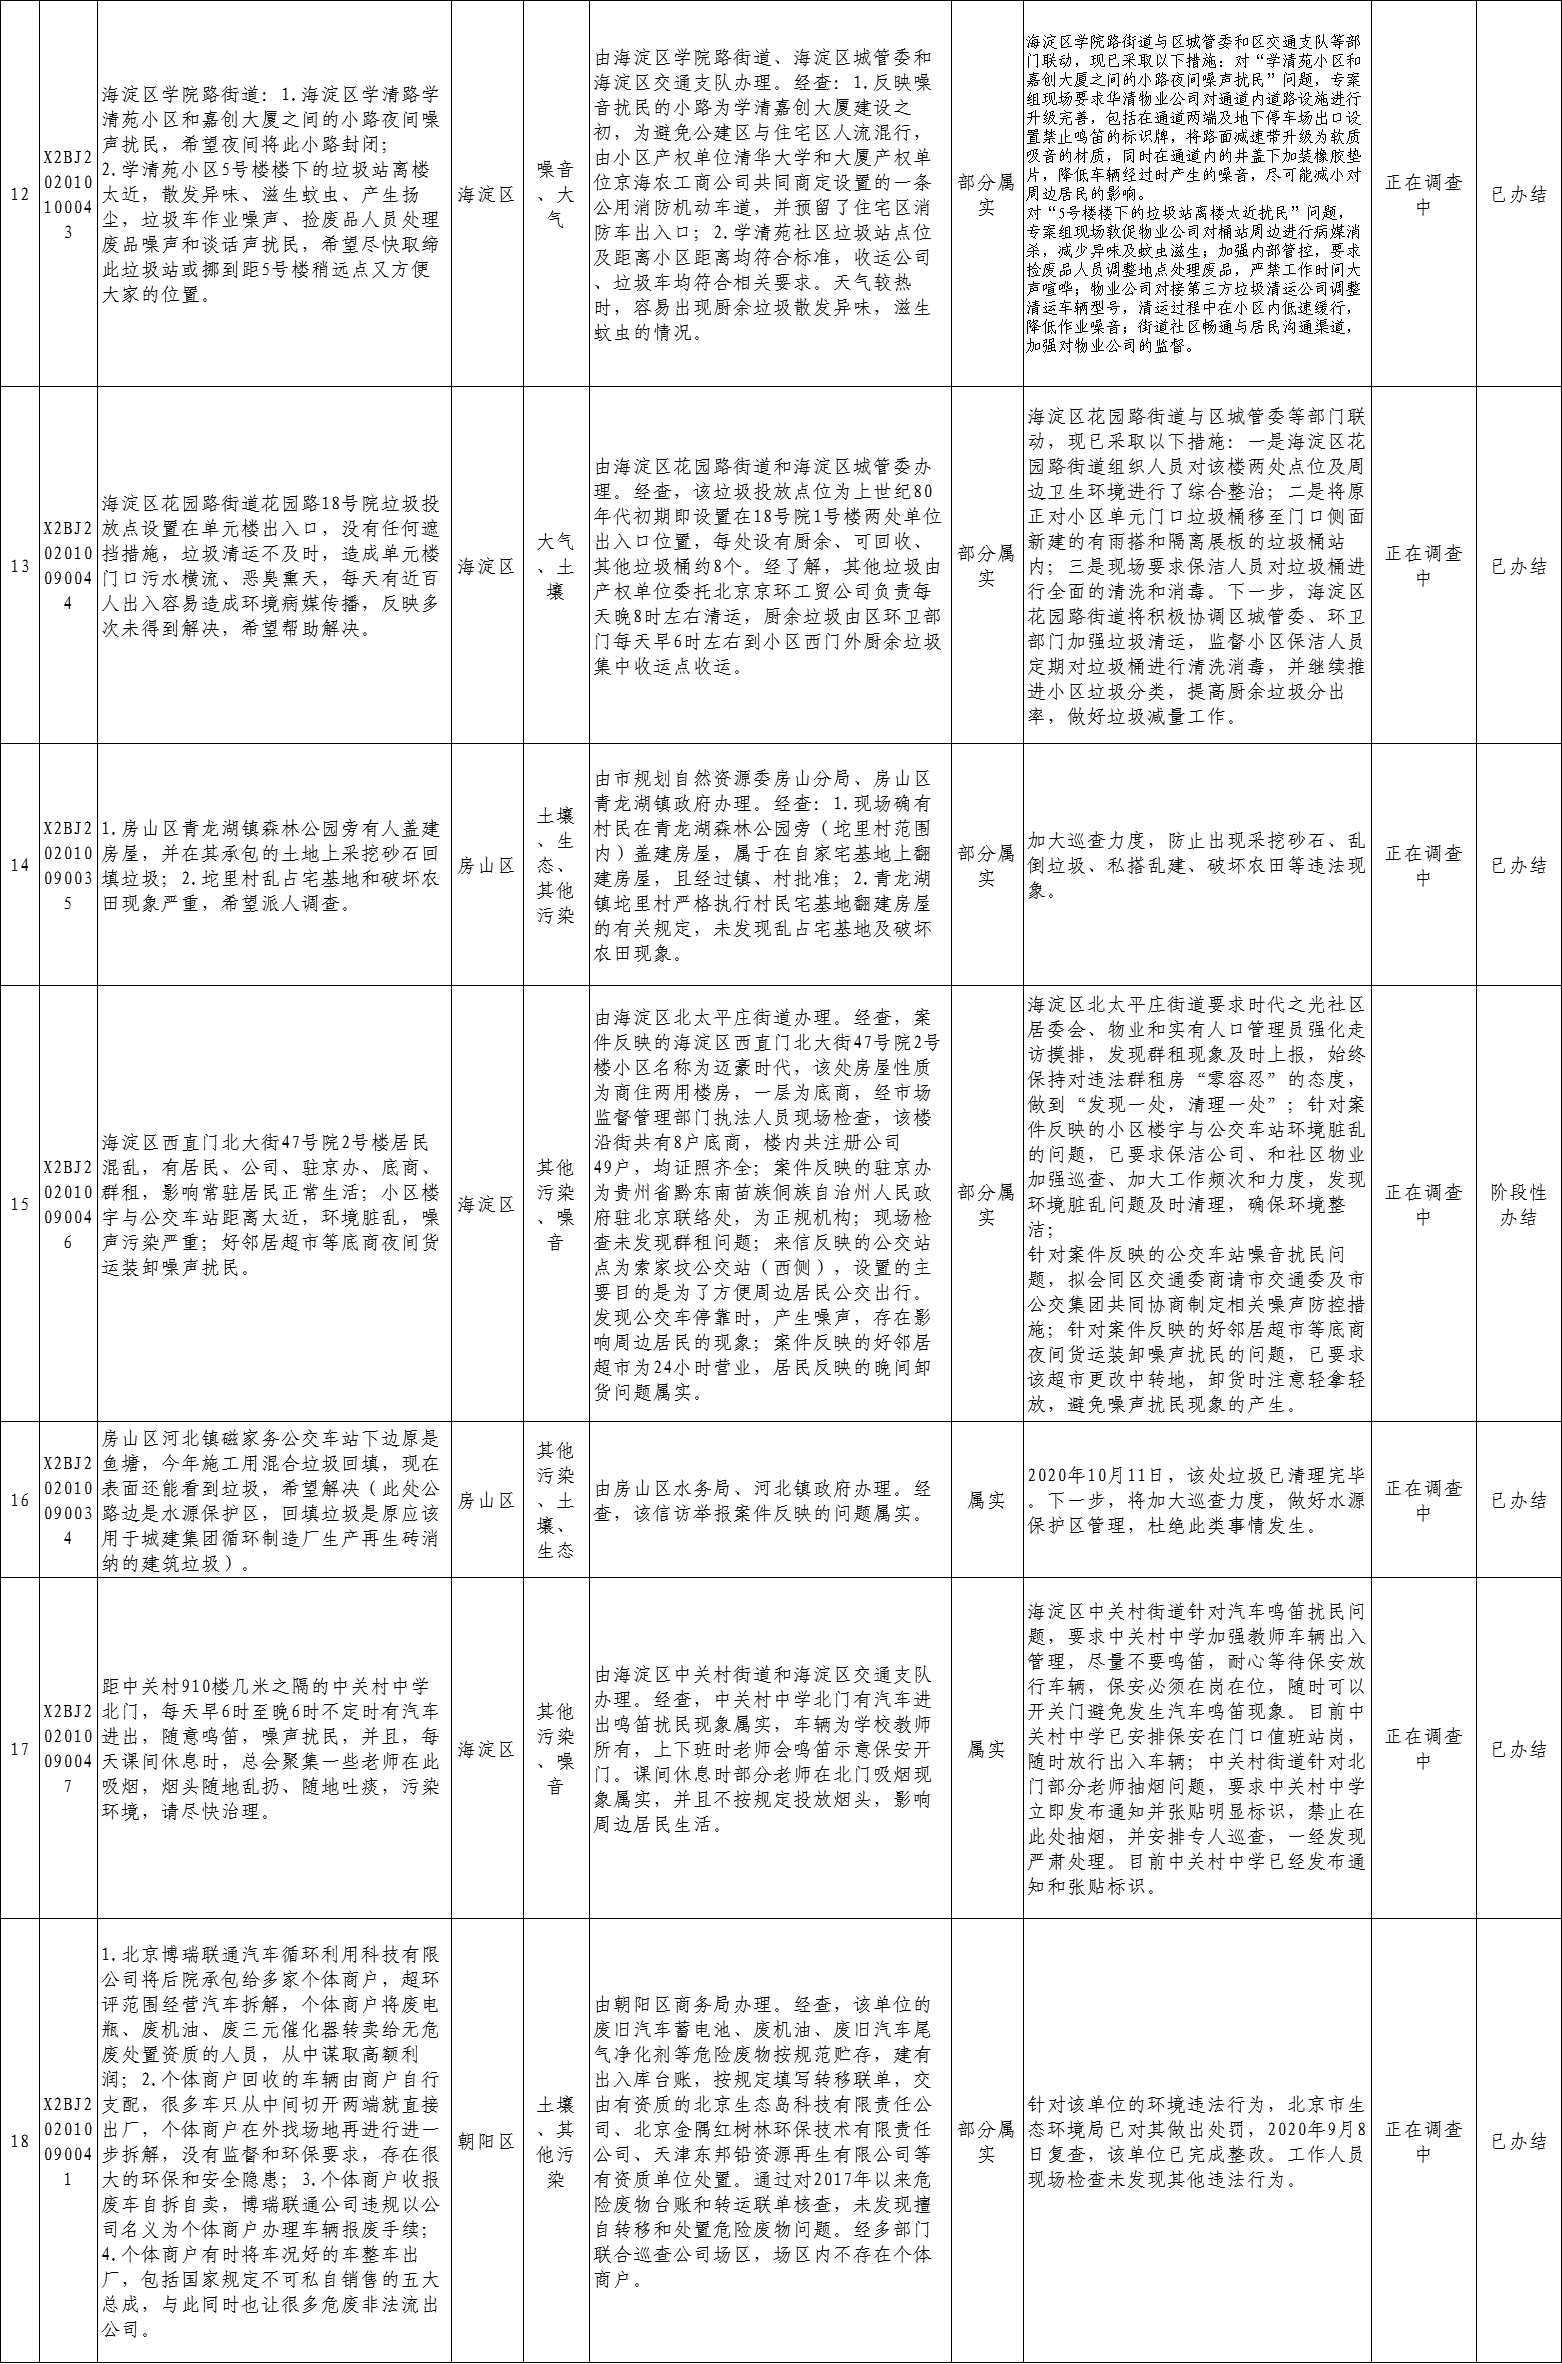 北京市群眾信訪舉報轉辦和邊督邊改公開情況一覽表(第三十二批)